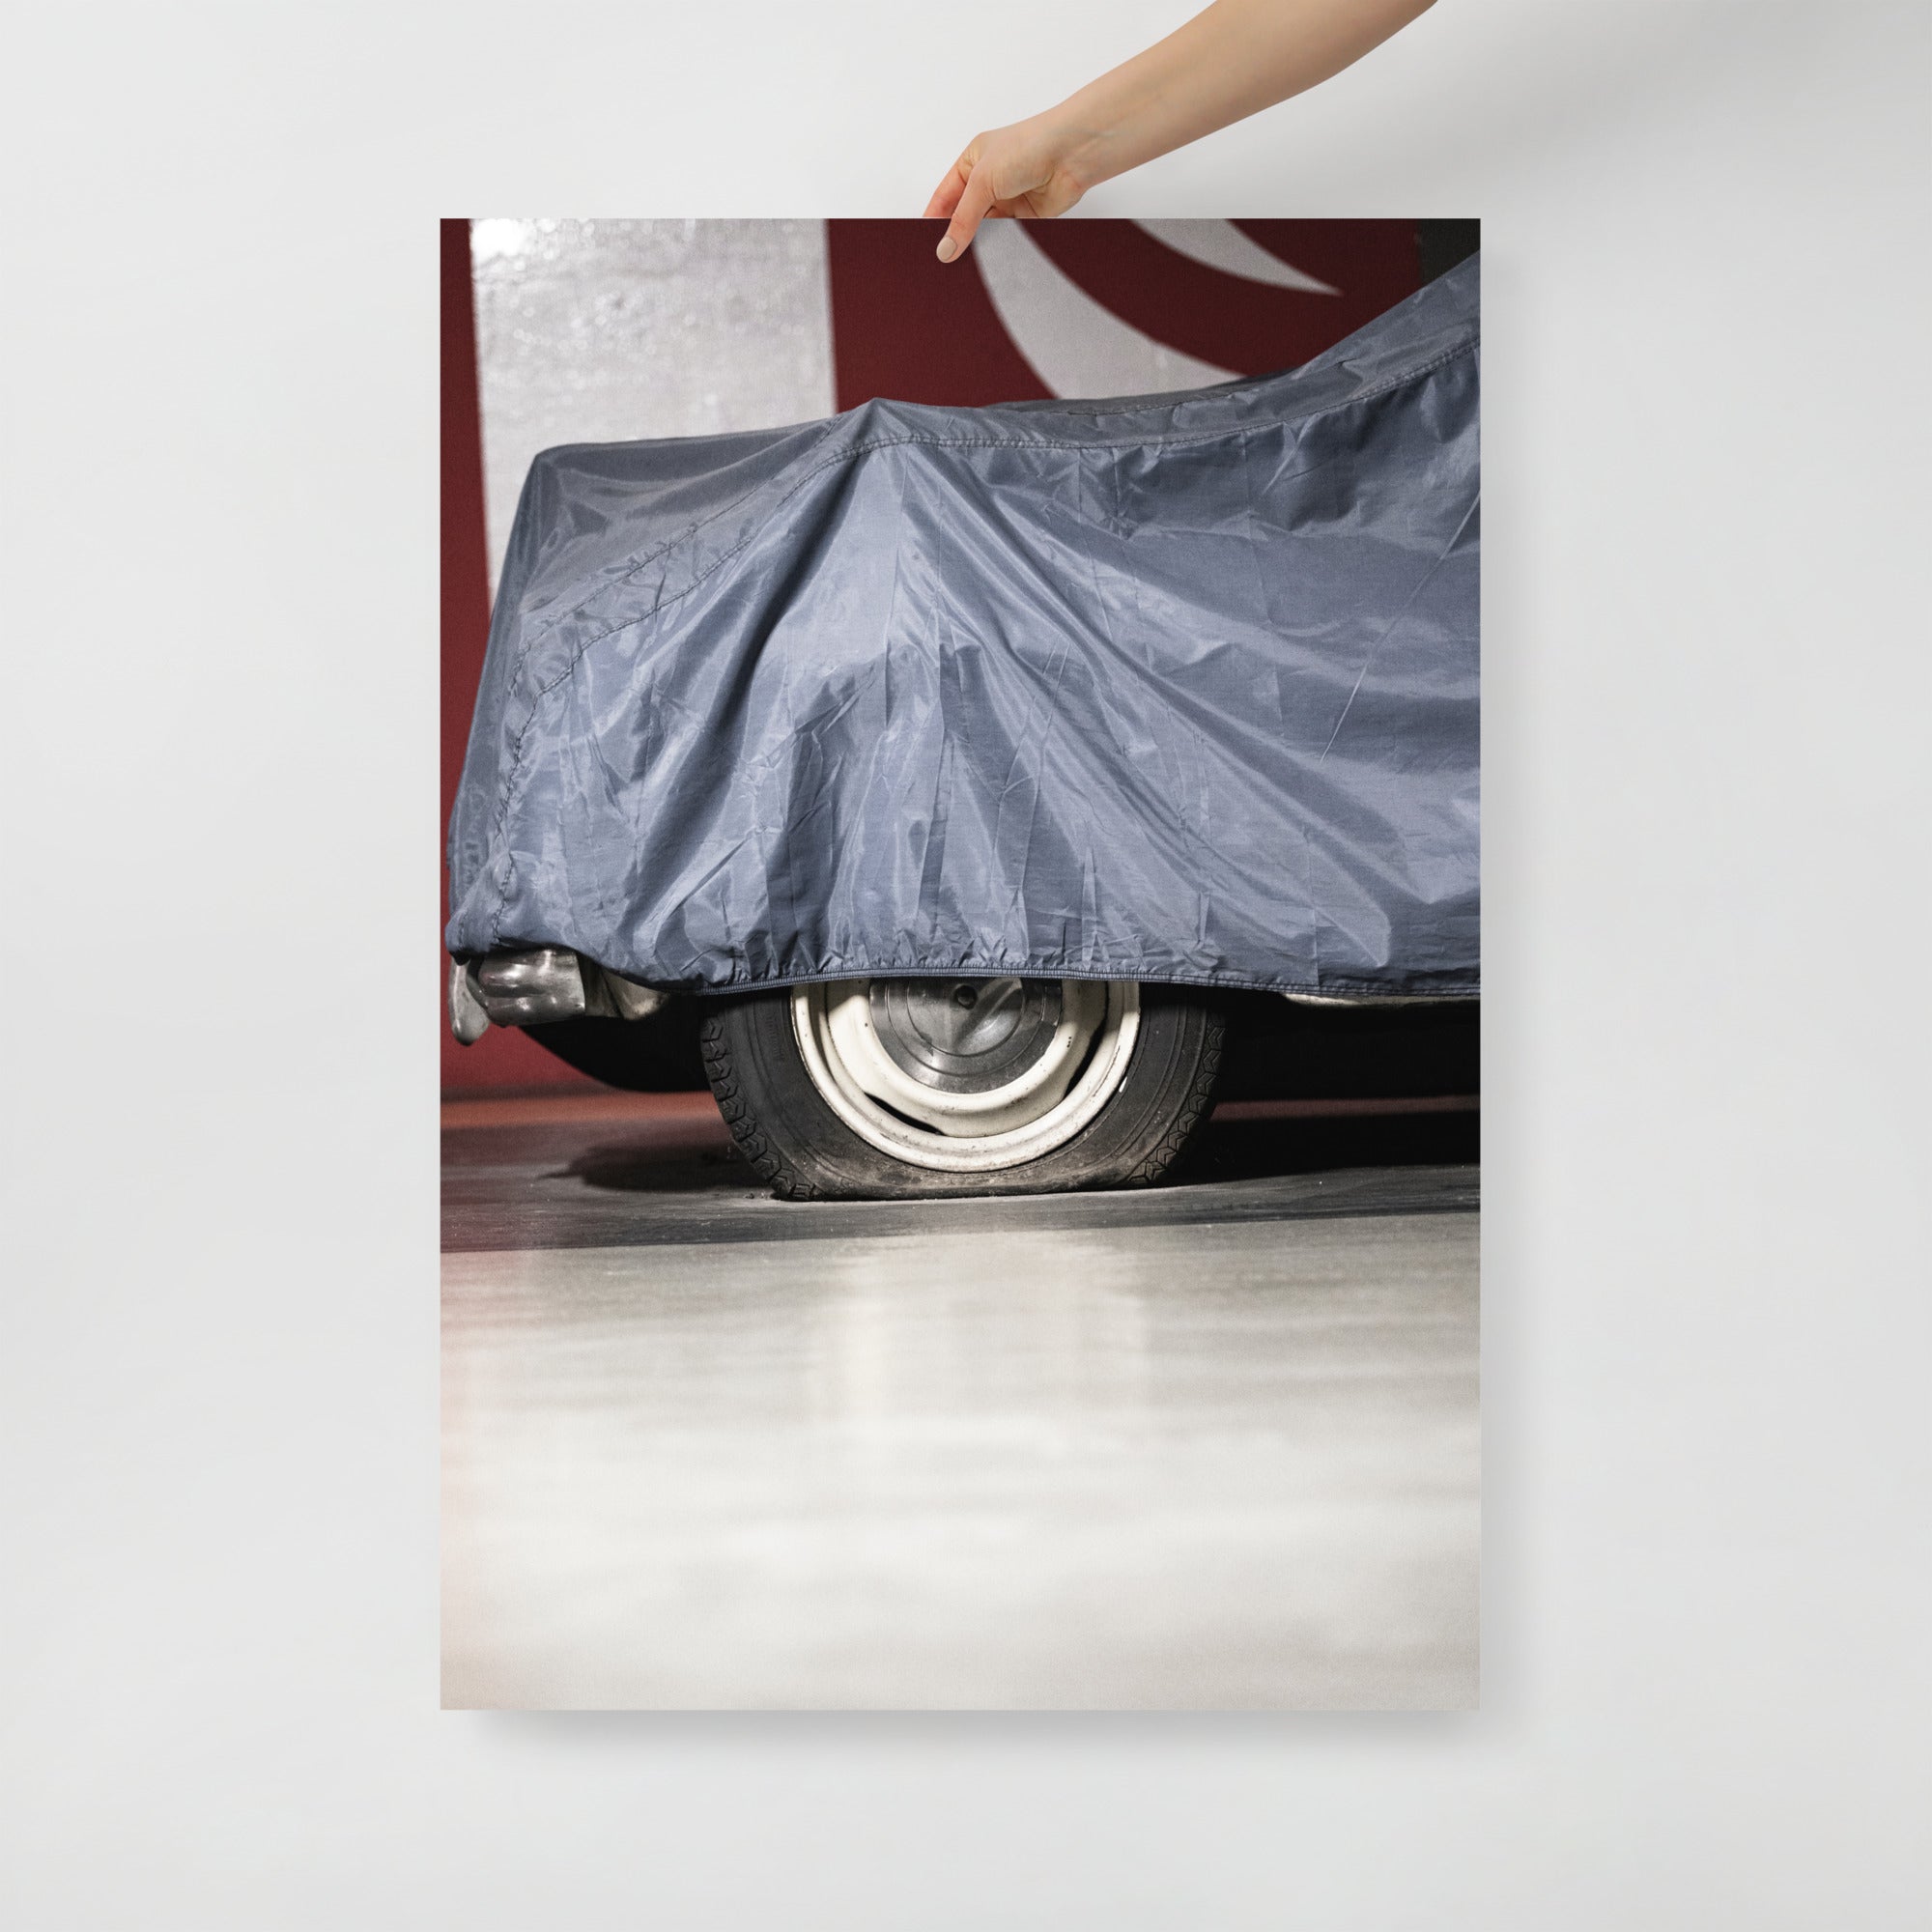 Poster mural - Une voiture abandonnée – Photographie de vielle voiture – Poster photo, poster XXL, photographie murale et des posters muraux unique au monde. La boutique de posters créée par Yann Peccard un Photographe français.